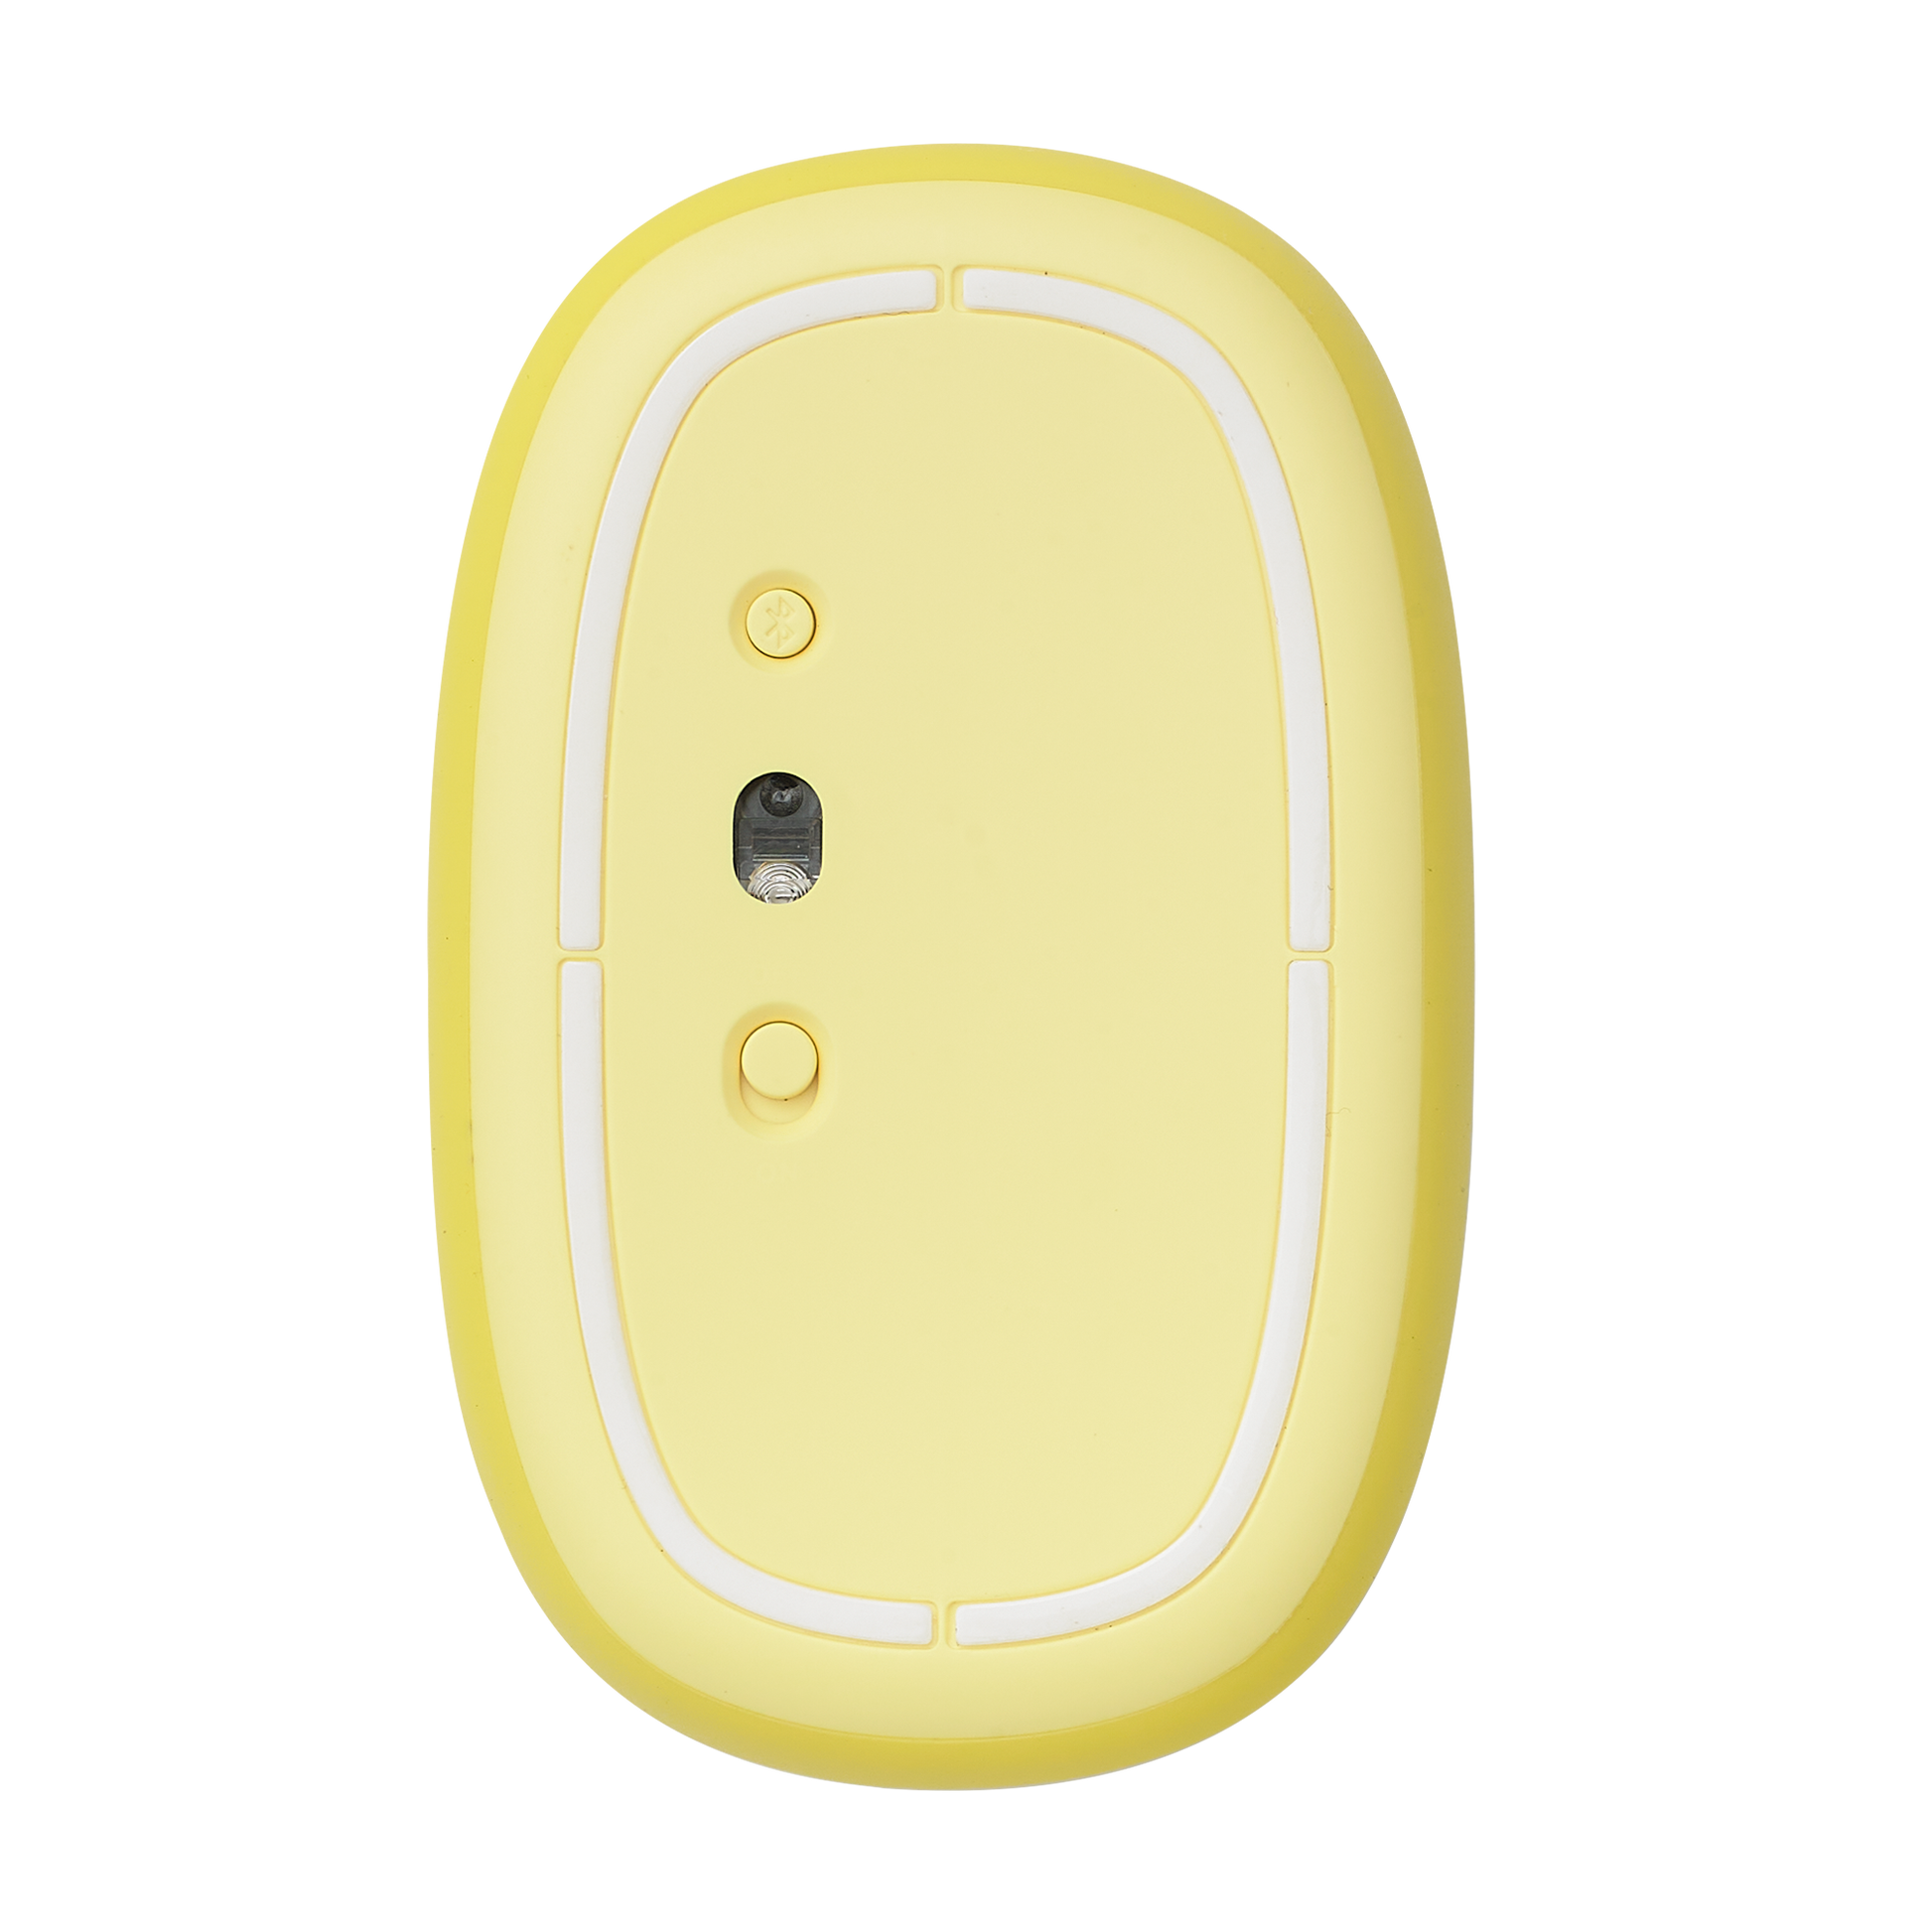 Rato Óptico Rapoo M660 Silent Multi-mode Wireless 1300DPI Amarelo